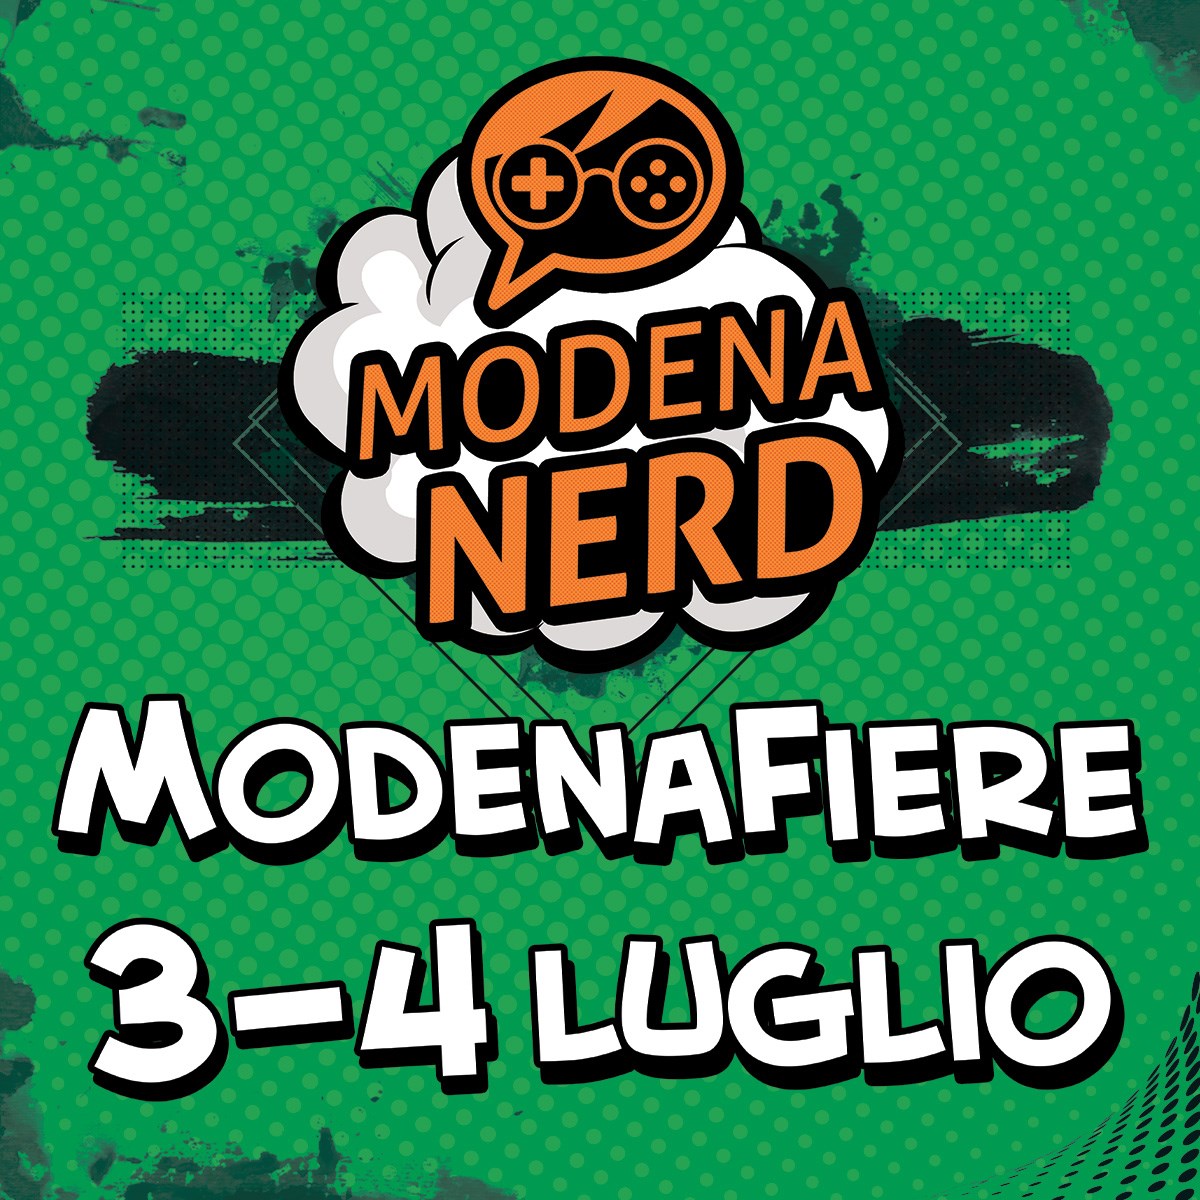 Modena Nerd: 3 e 4 luglio 2021